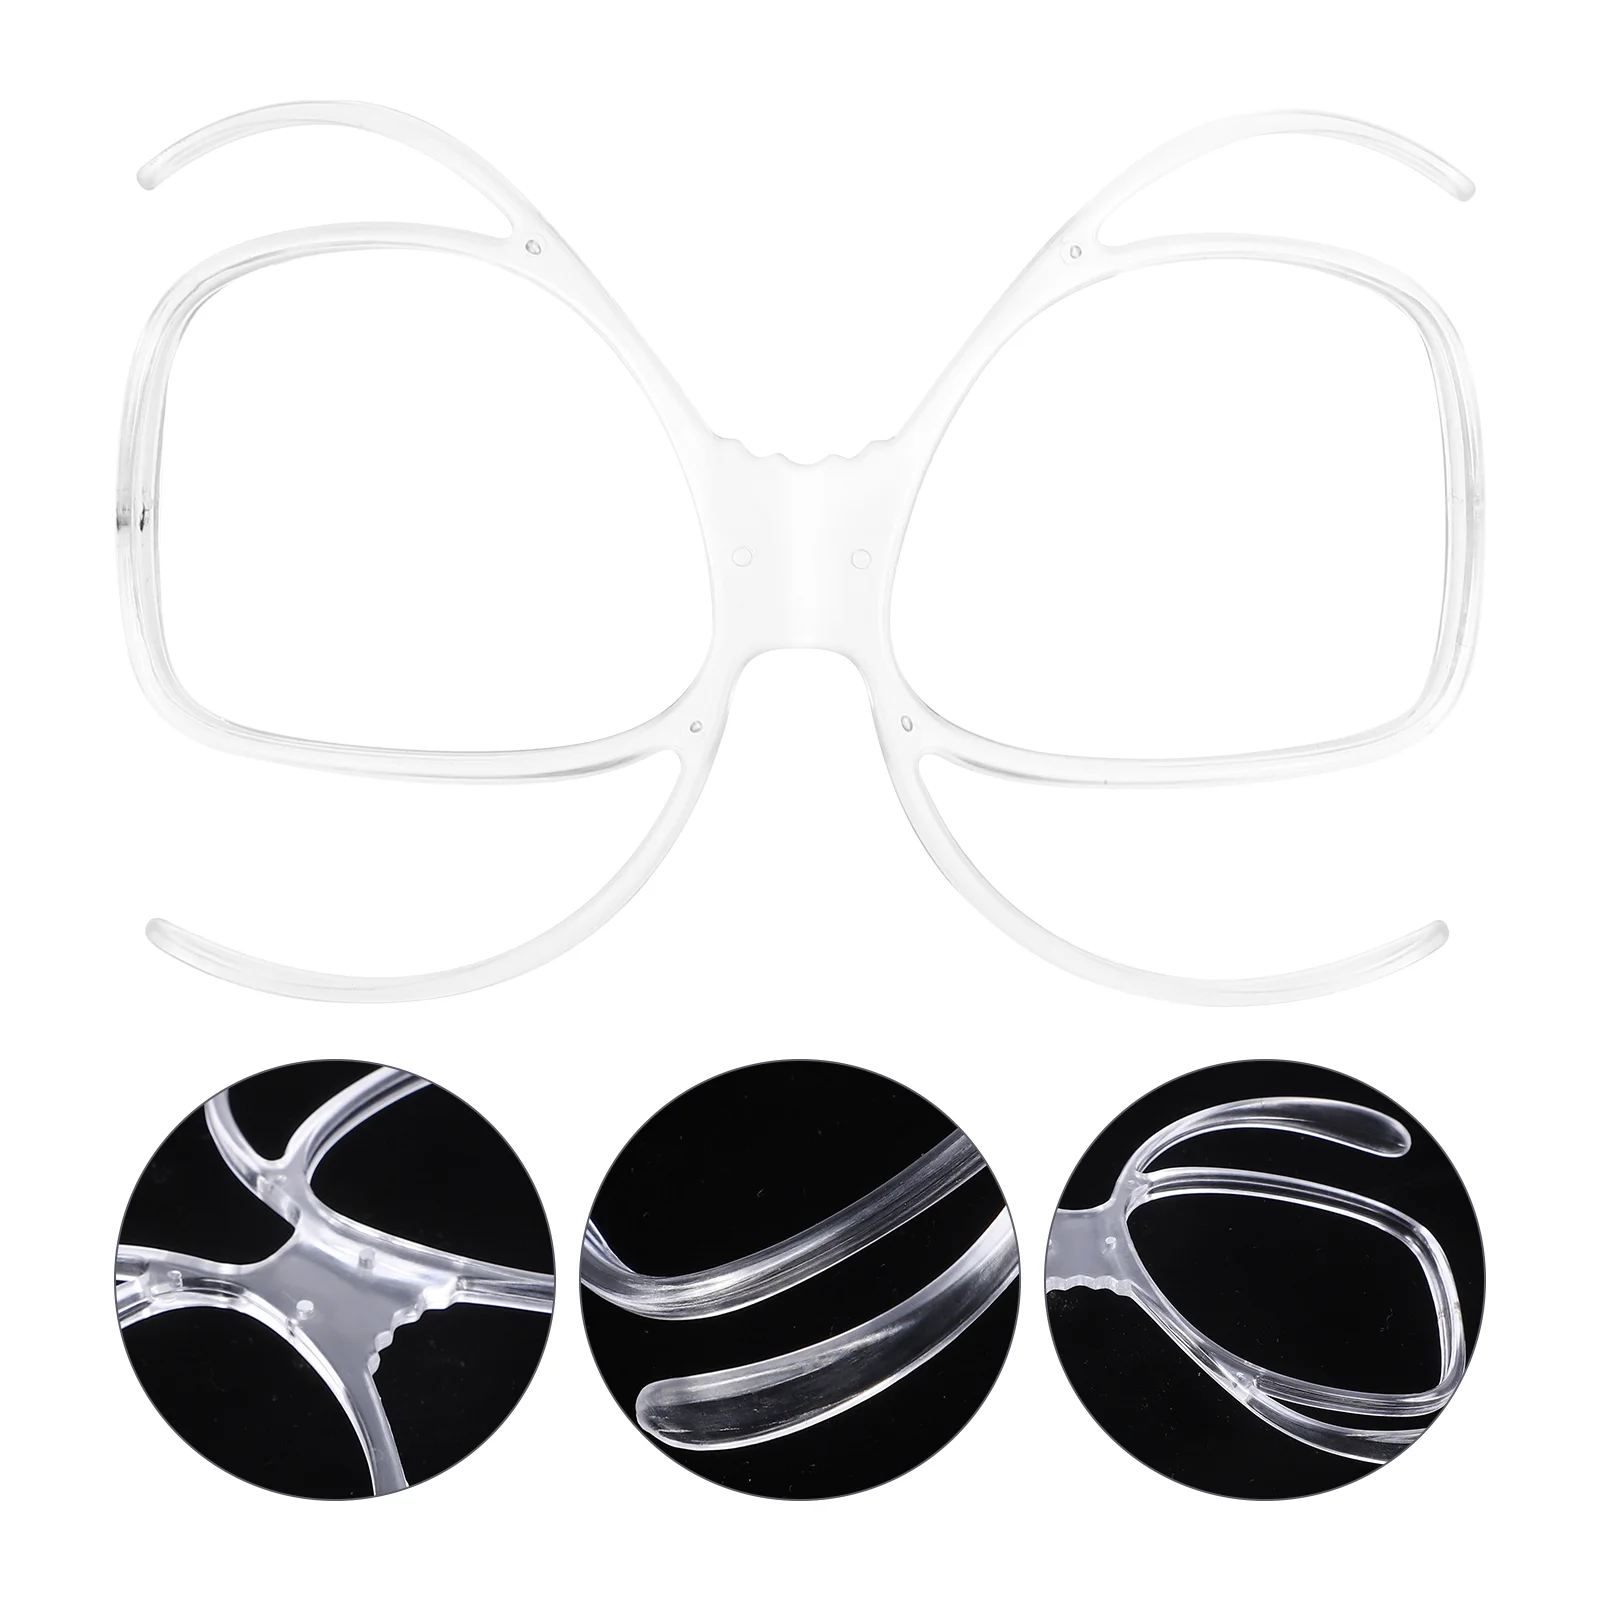 

Ski Goggles Myopic Glass Frame Prescription Ski Sunglasses Sunglasses For Skiing Womens Ski Goggles Sunglasses Adapter